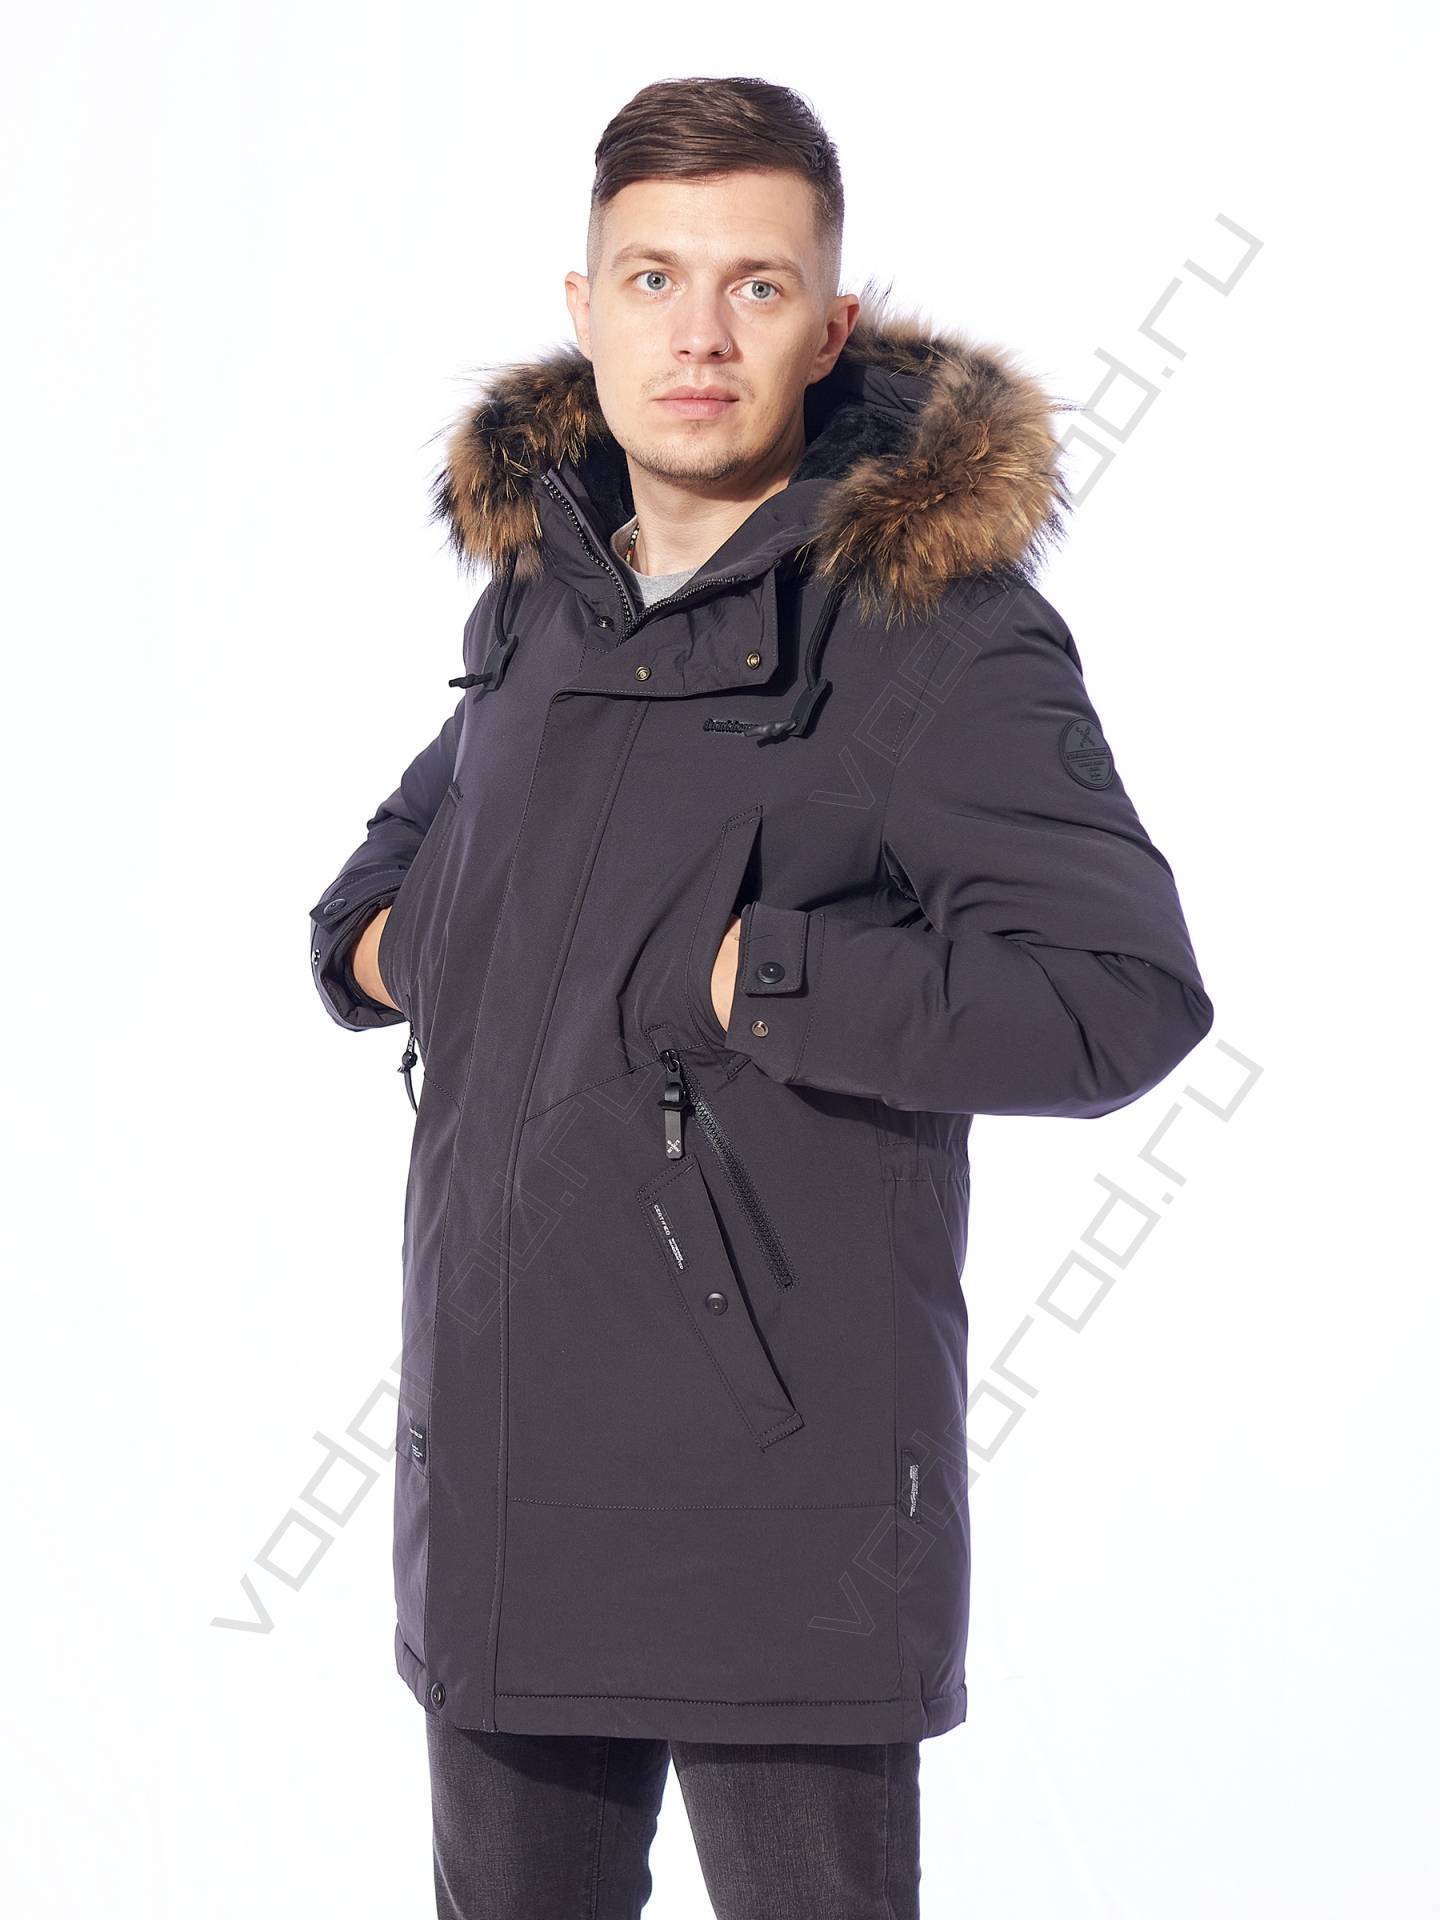 Зимняя куртка мужская цвет серосиний 11